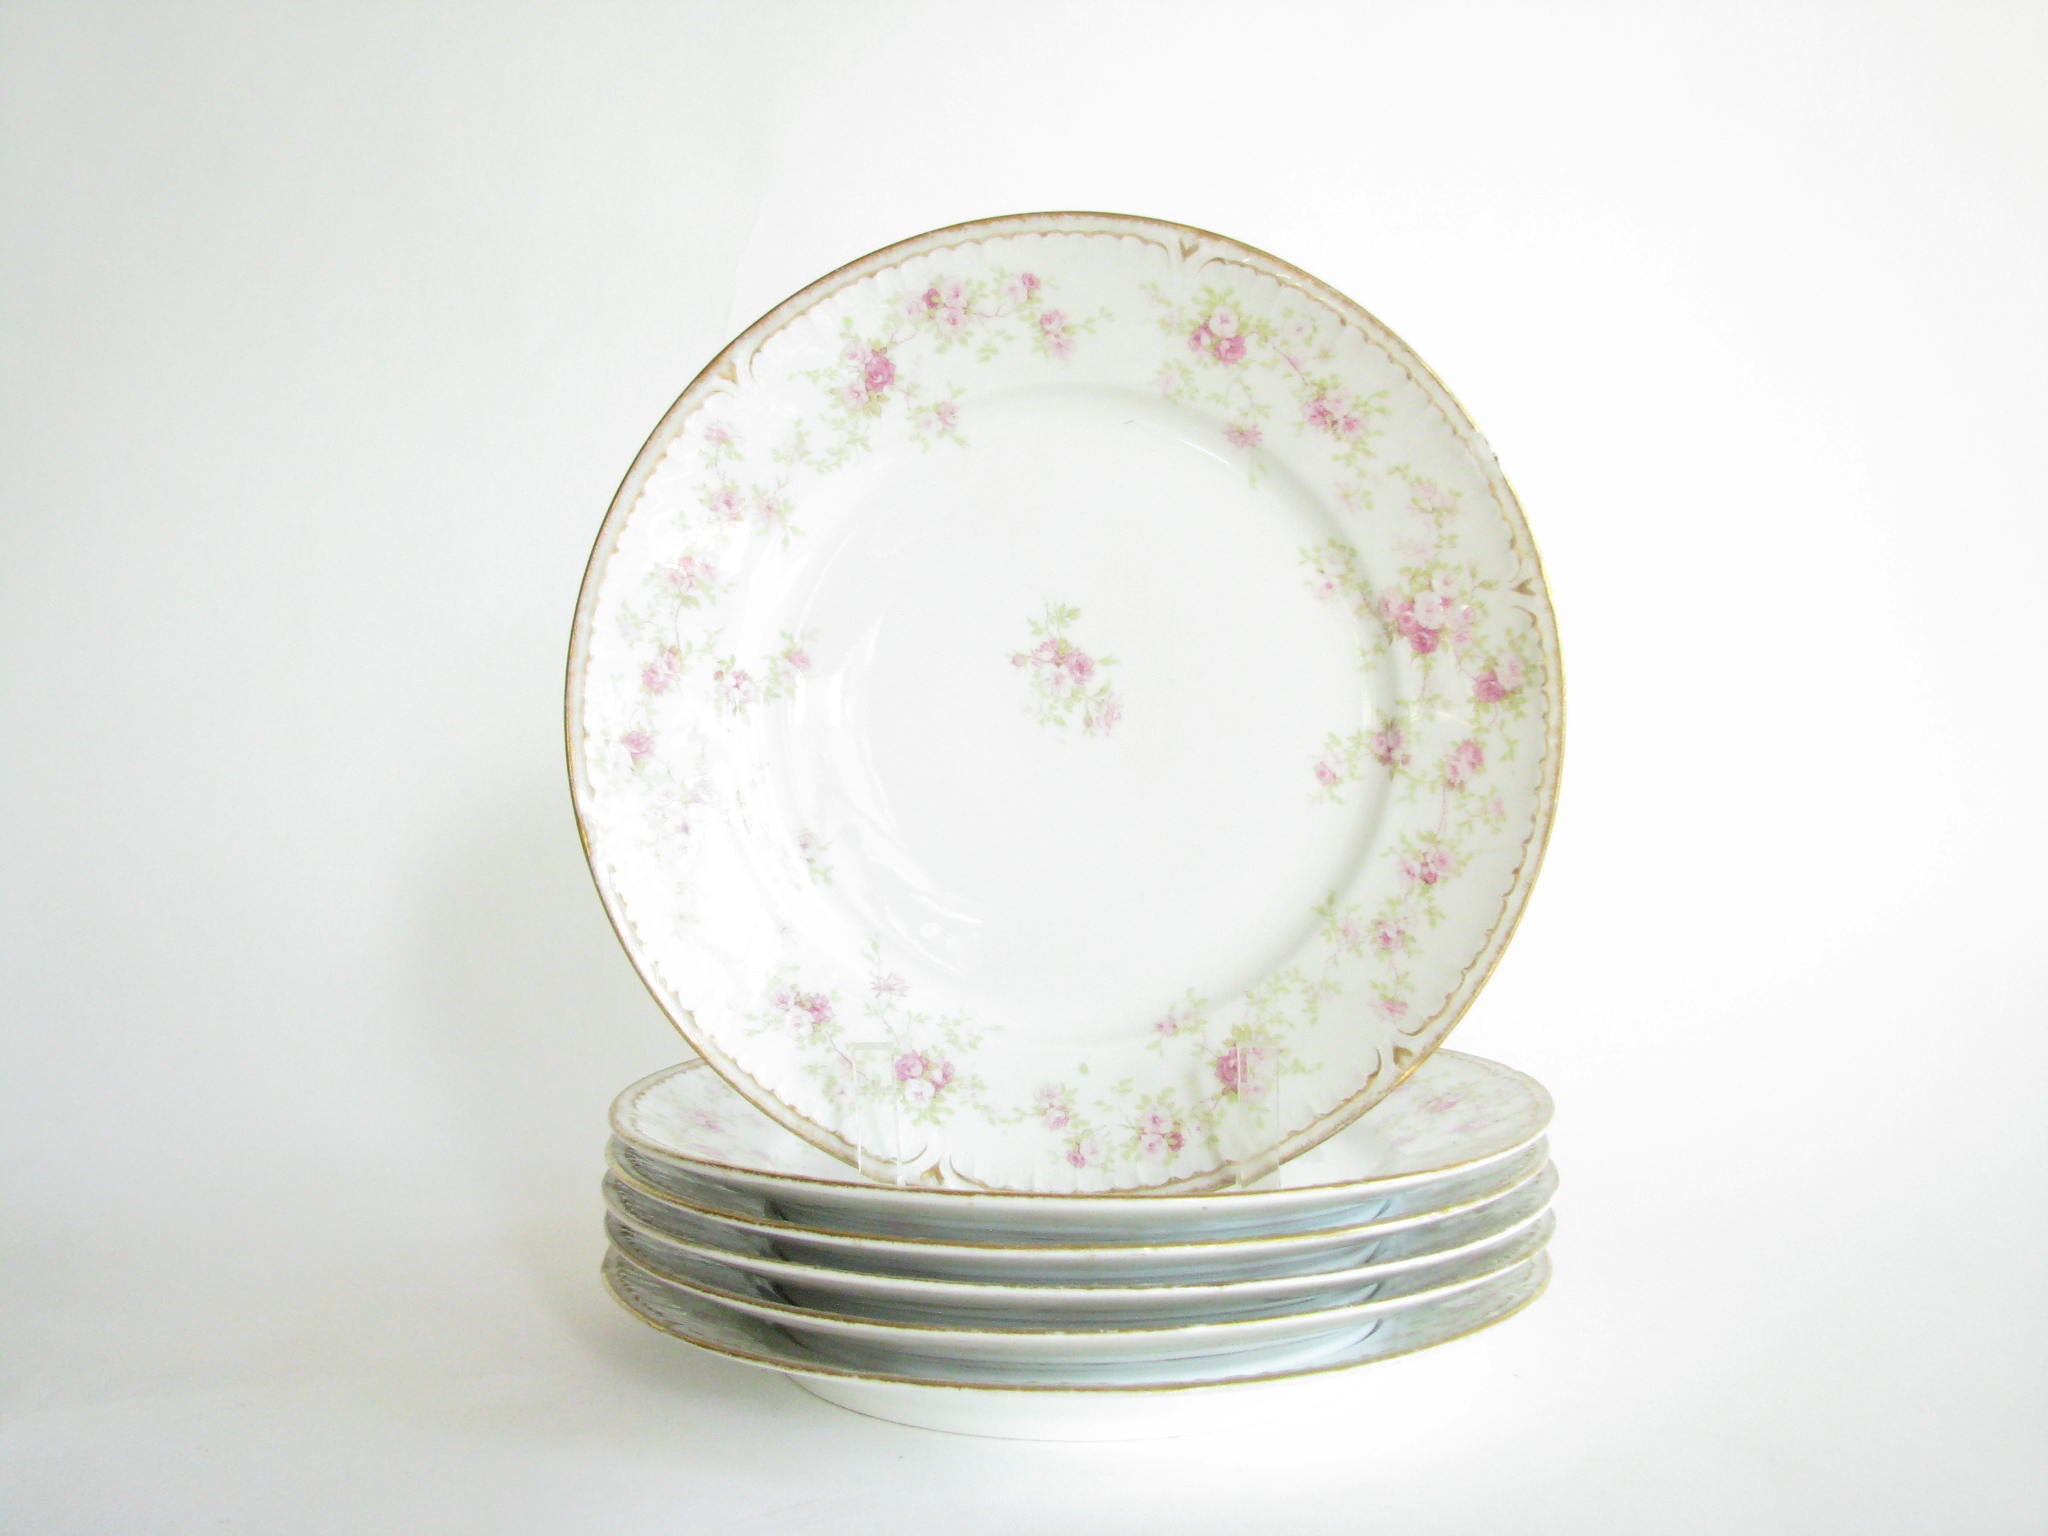 edgebrookhouse - Antique Charles Field Haviland GDA Limoges Floral Porcelain Dinner Plates - Set of 6